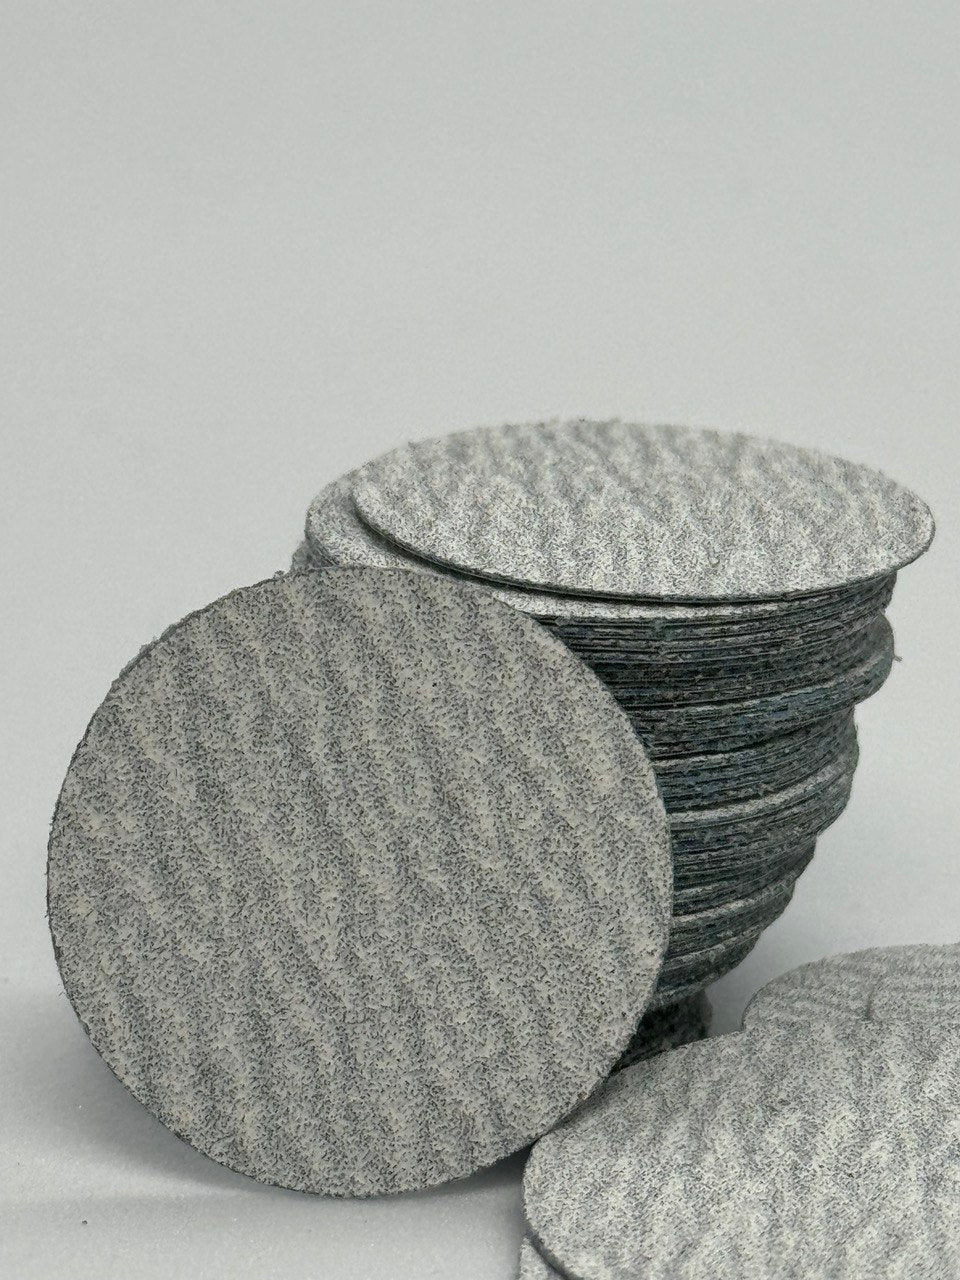 LisaKon Pedicure Disc Refill Pads For Pedicure (50 pcs) M/L(20/25 mm) 100/180/320 GRIT